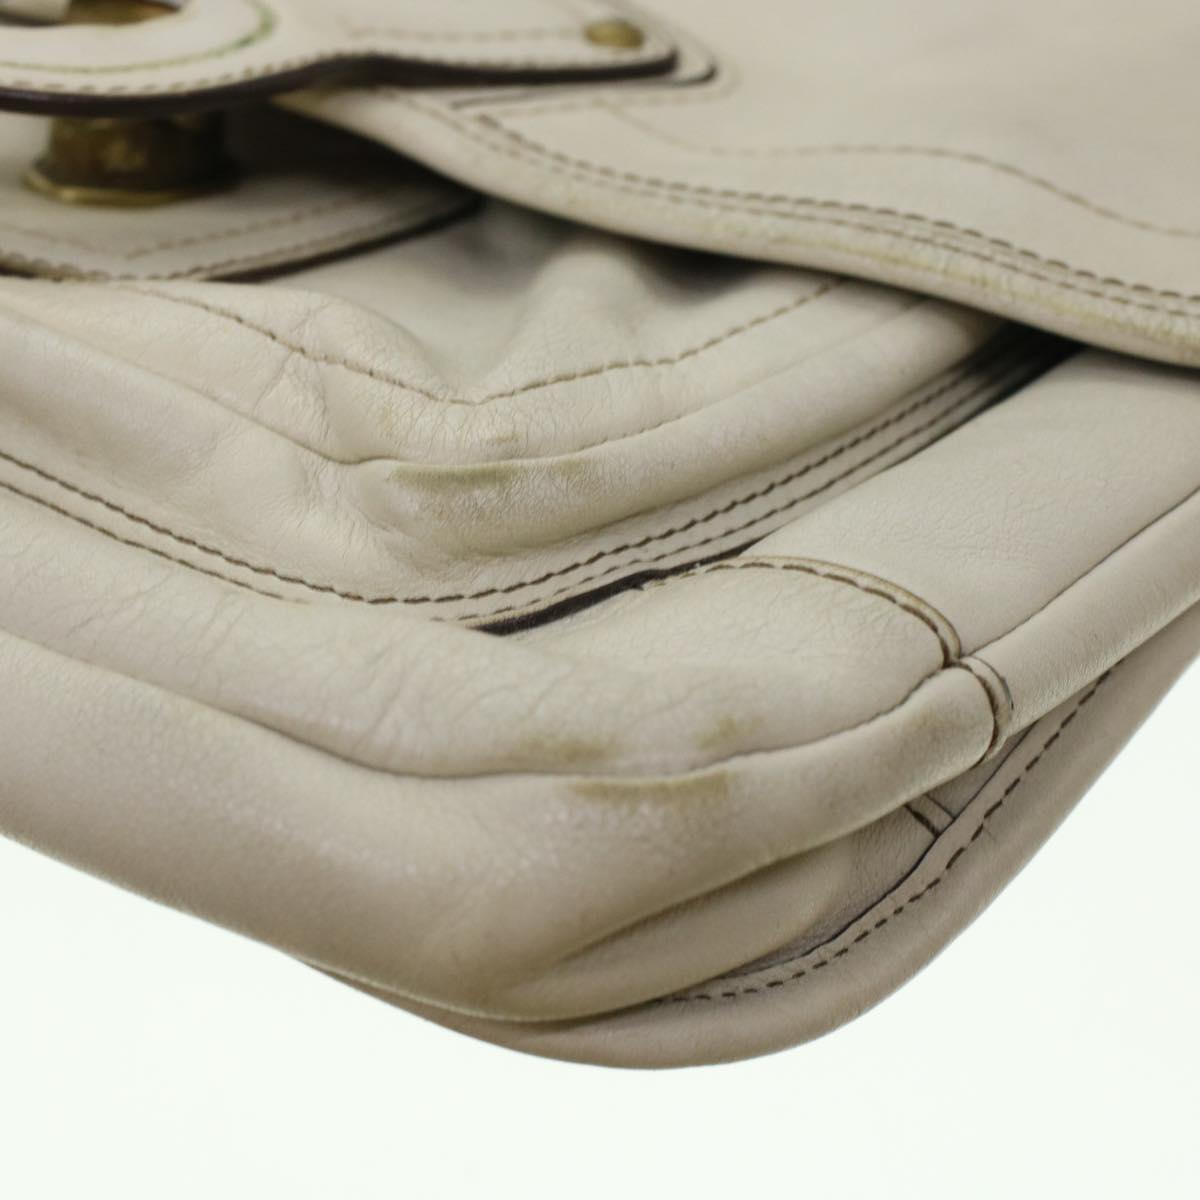 Coach Signature Shoulder Bag Canvas Leather 3Set Beige Brown Auth 44692